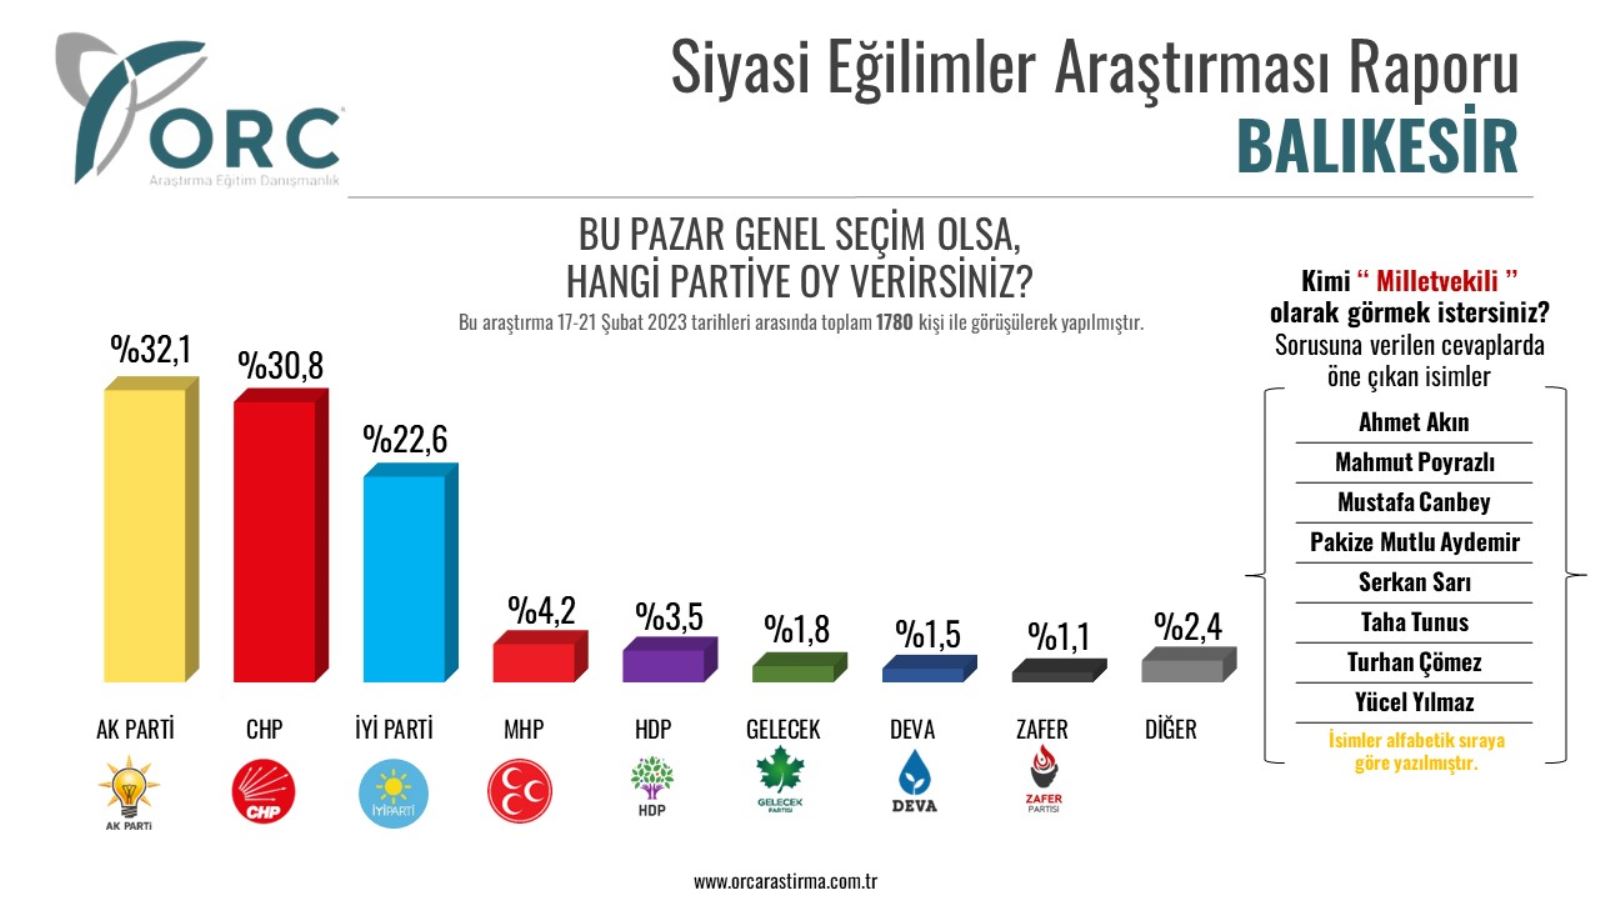 <p>Ankette ayrıca, HDP yüzde 3,5 oranıyla beşinci parti olurken Gelecek Partisi ise yüzde 1.8 oranıyla altıncı parti olarak sıralamada yerini aldı.</p>